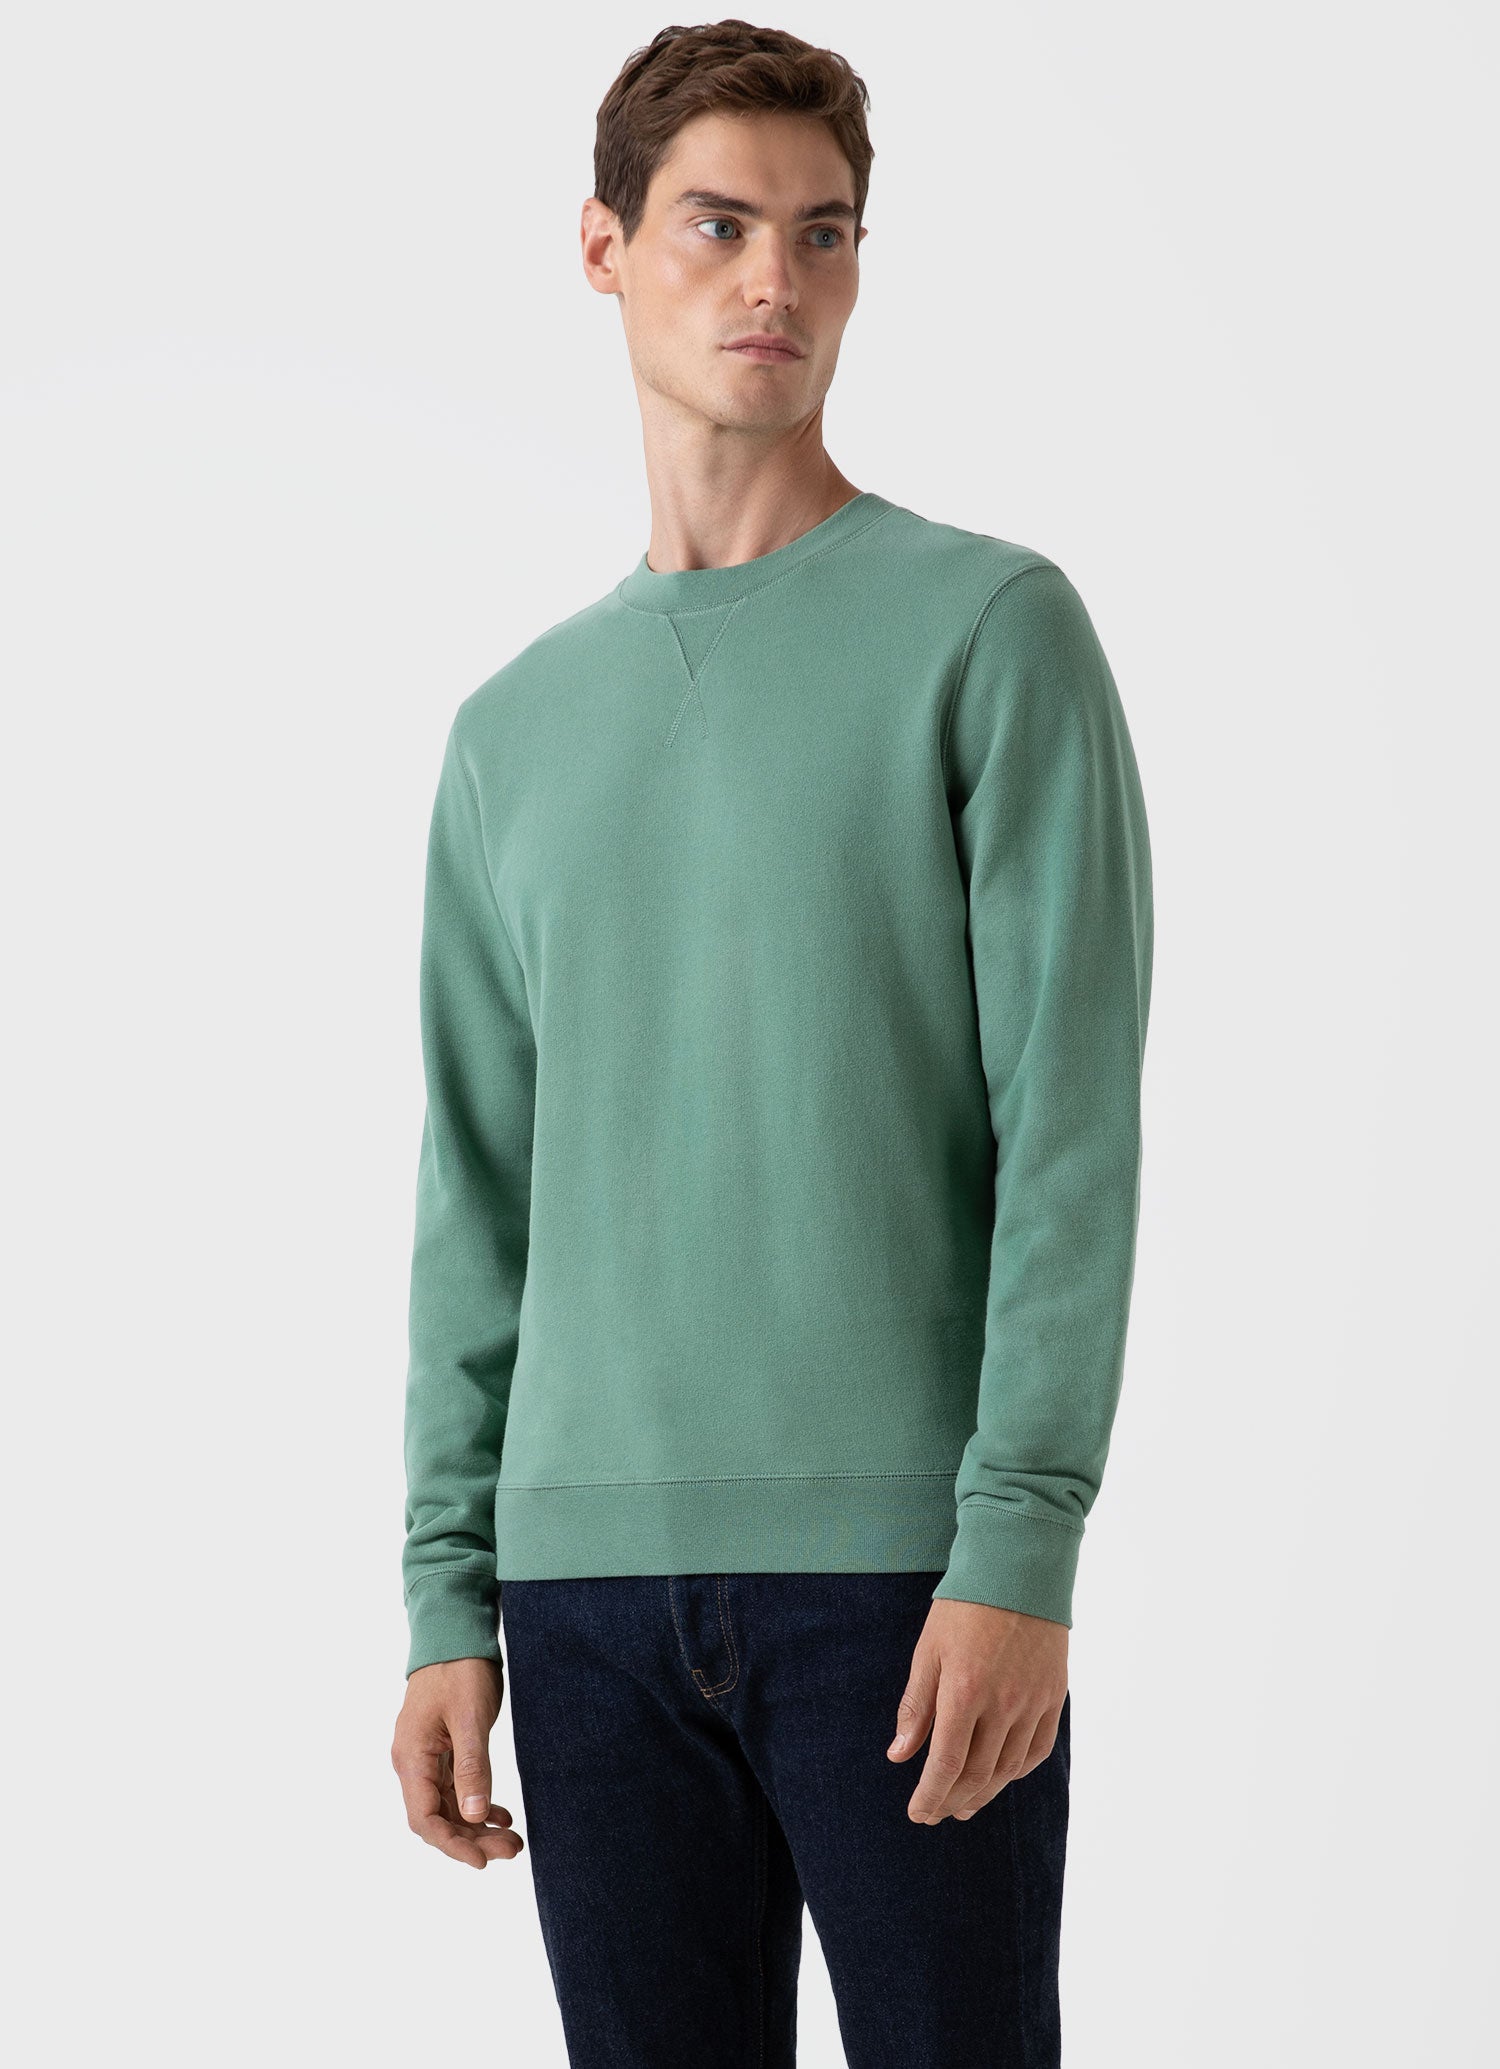 Men's Loopback Sweatshirt in Thyme